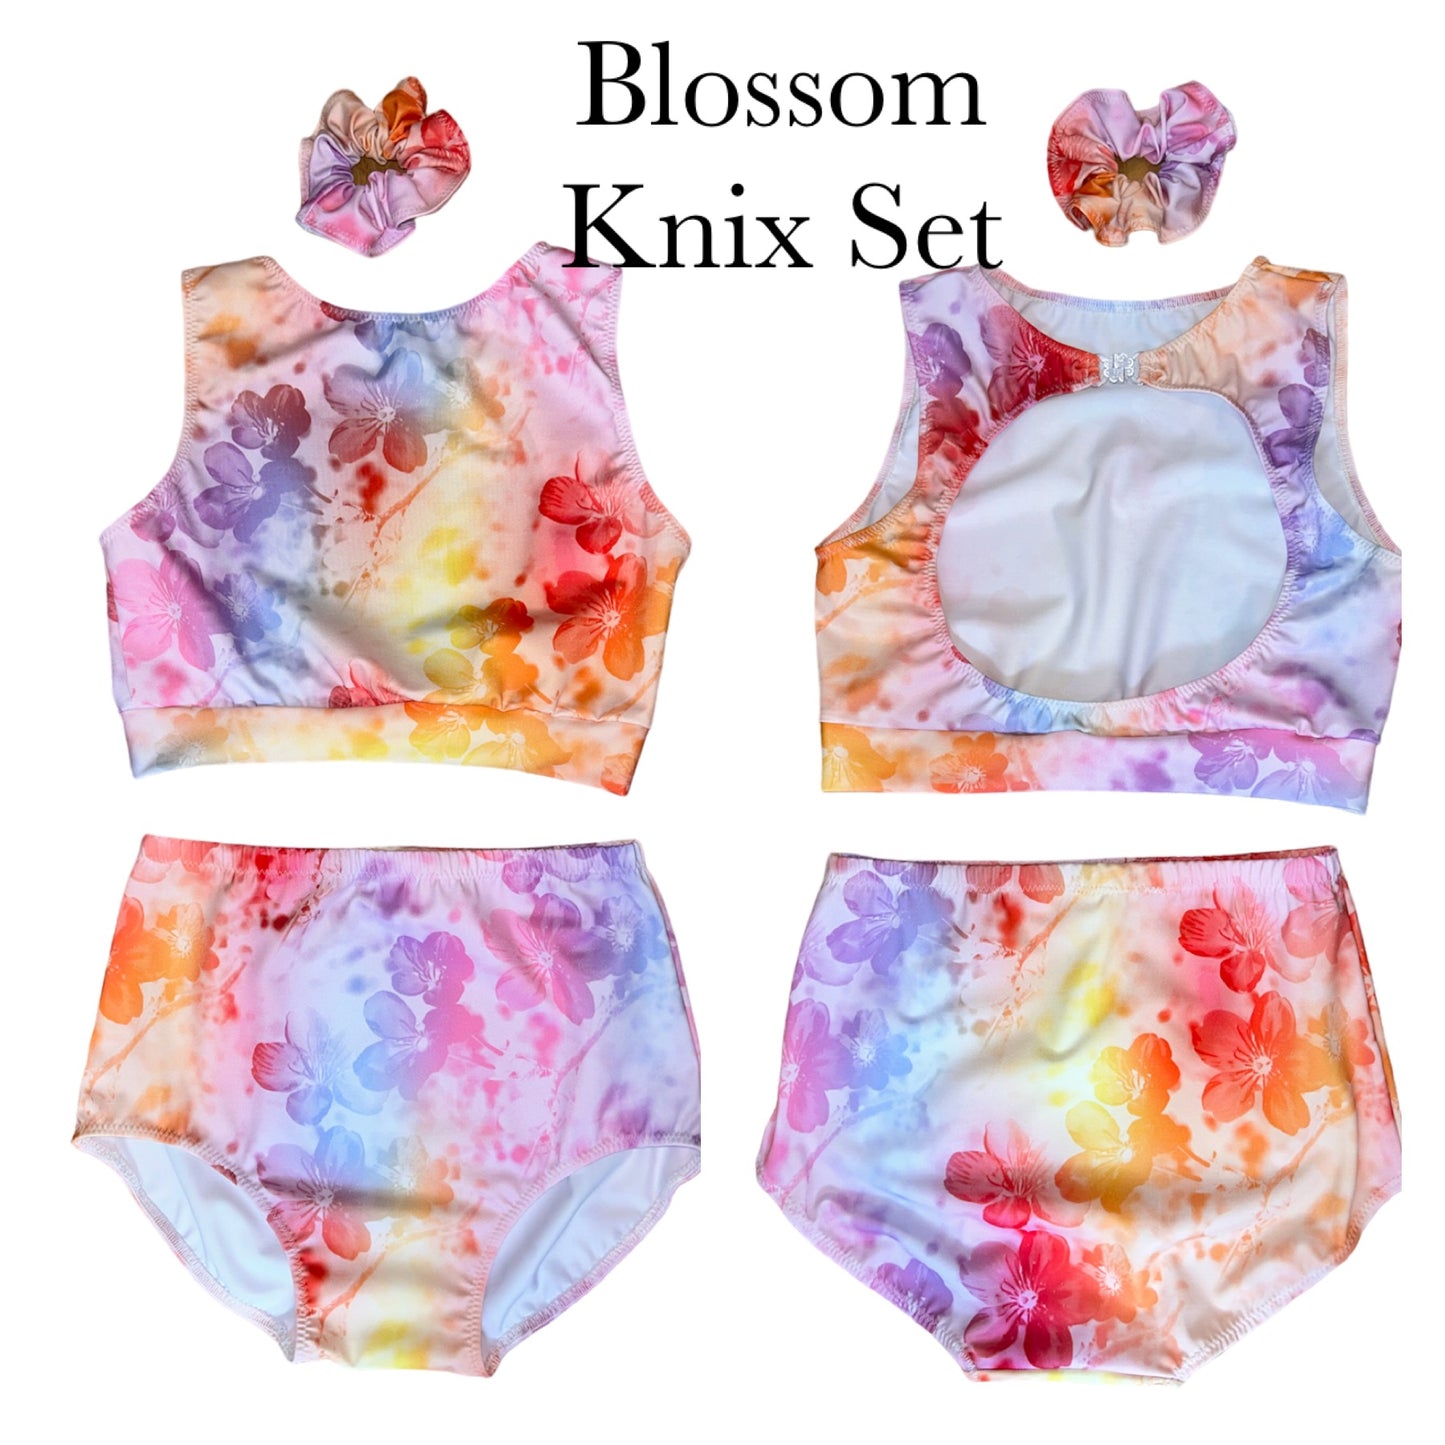 Blossom Knix Set